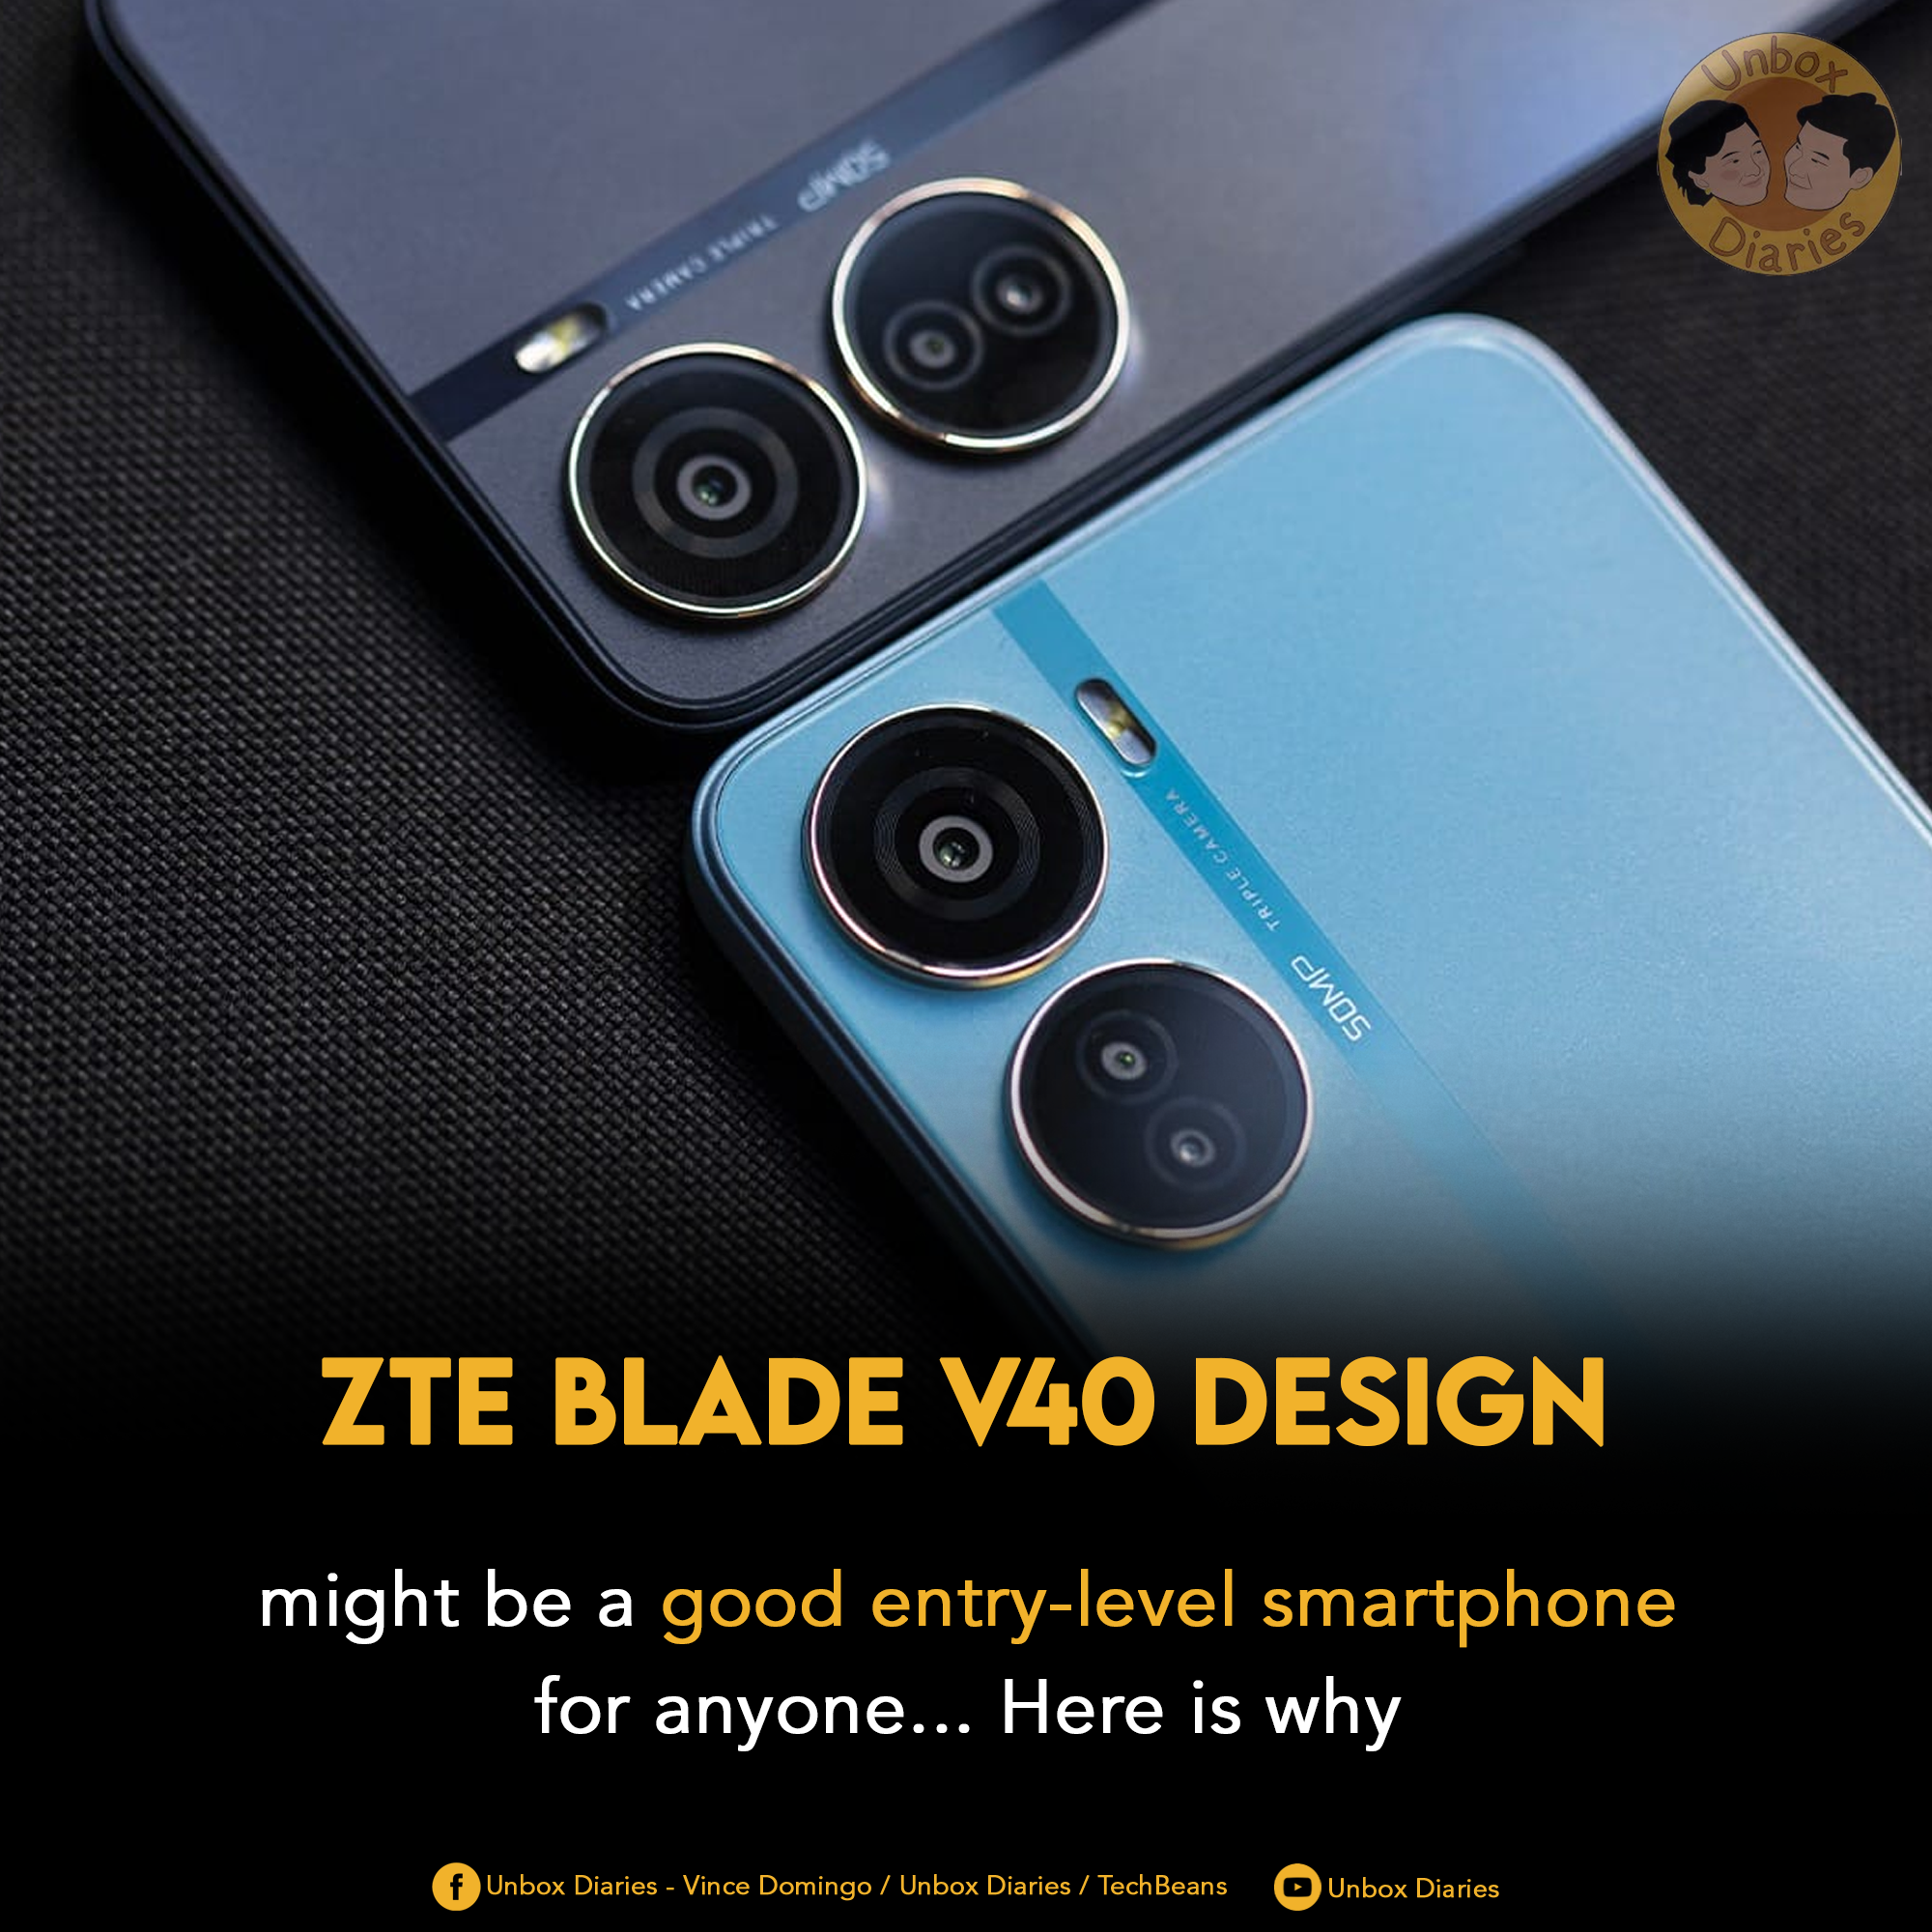 ZTE V40 Design is a bargain